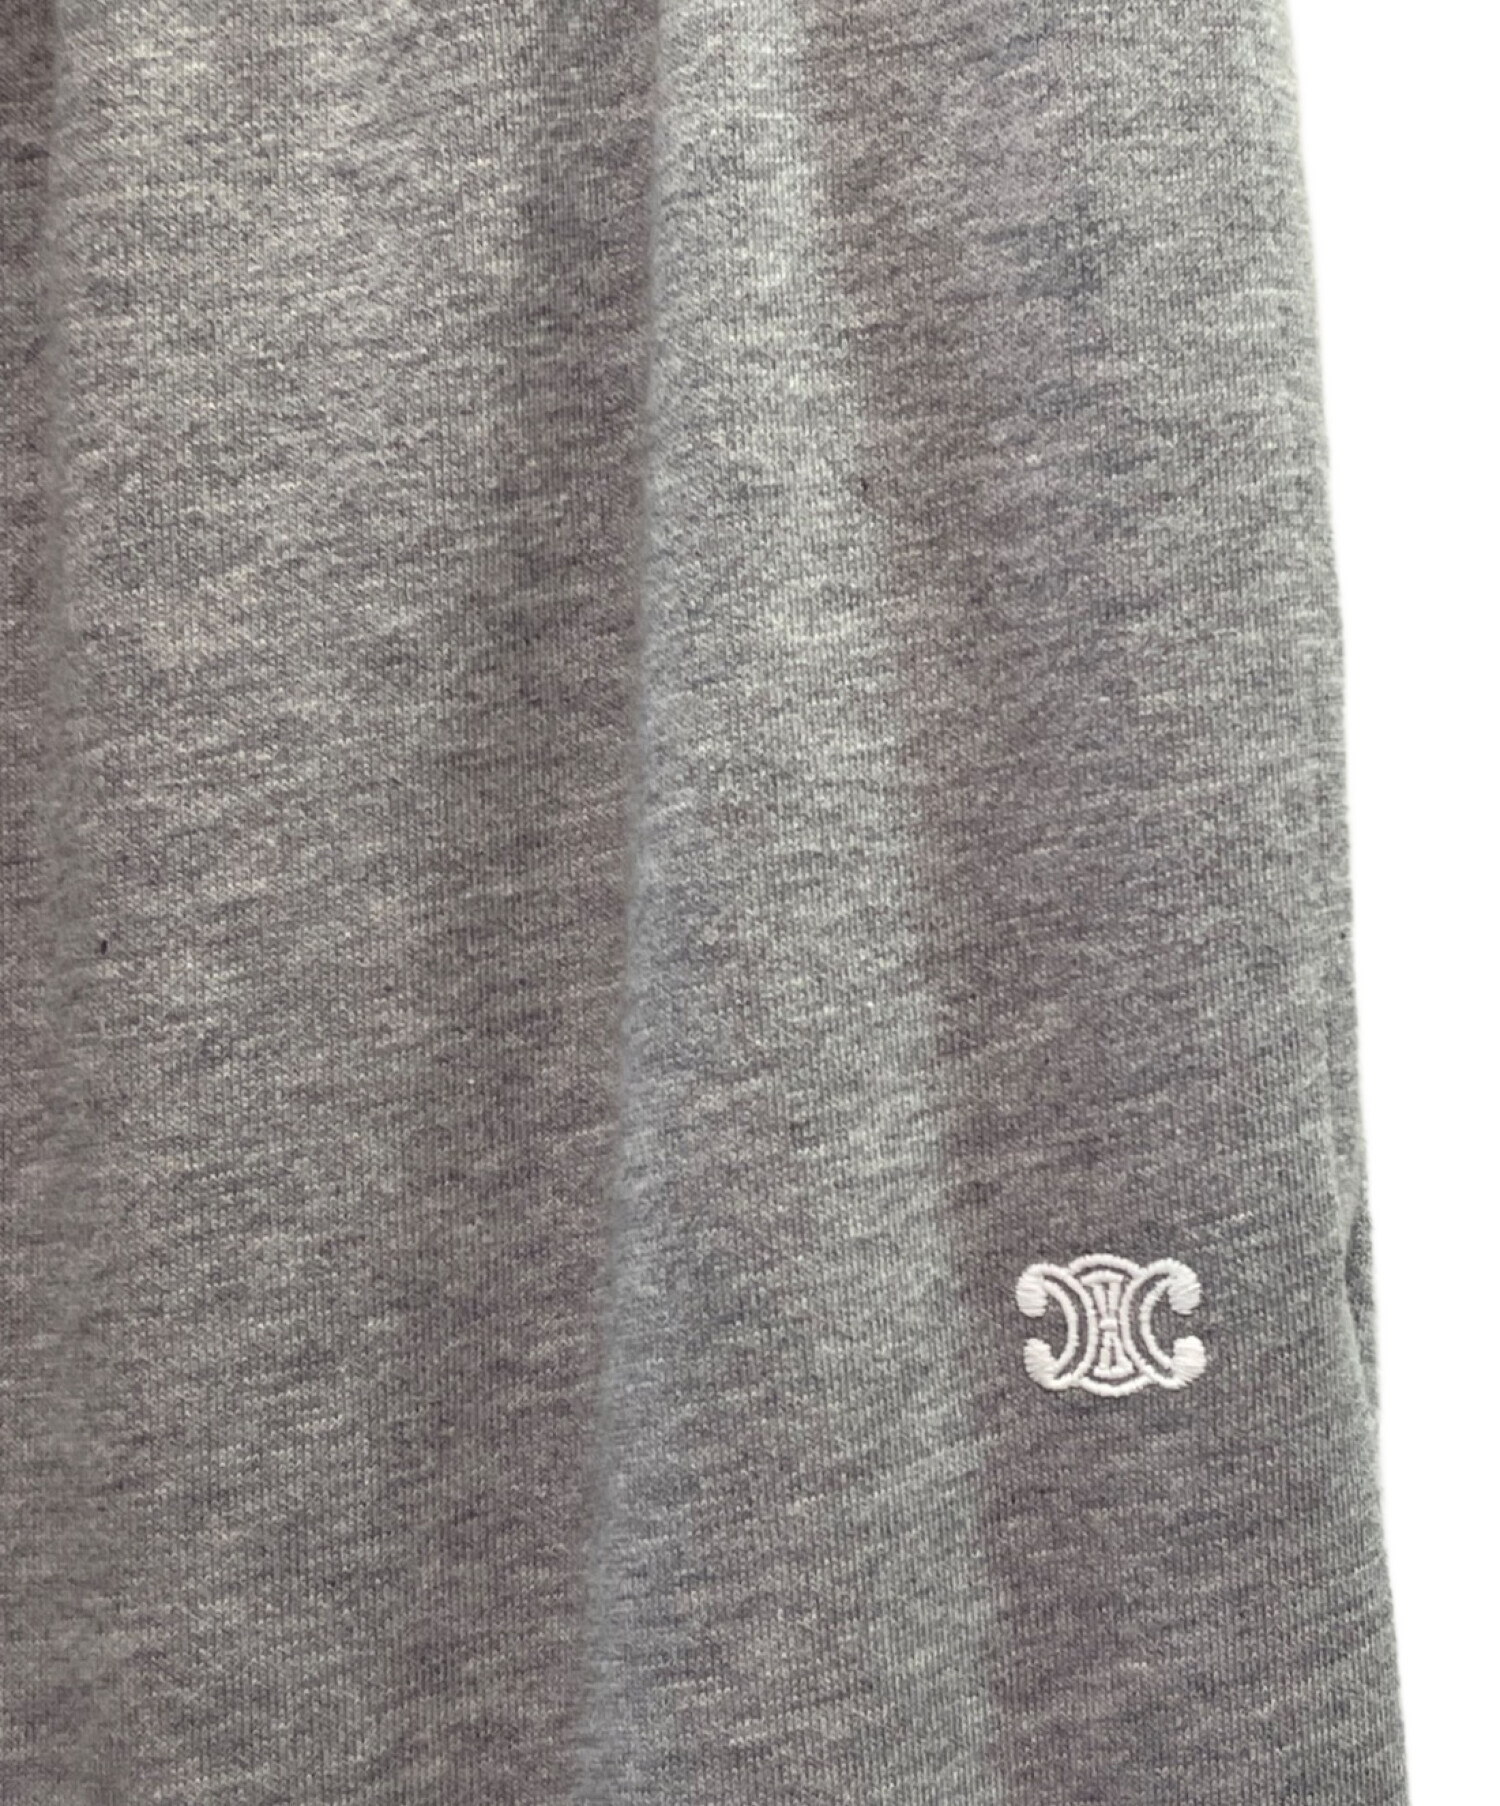 CELINE (セリーヌ) ロゴ刺繍 スウェットパンツ ライトグレー サイズ:XL